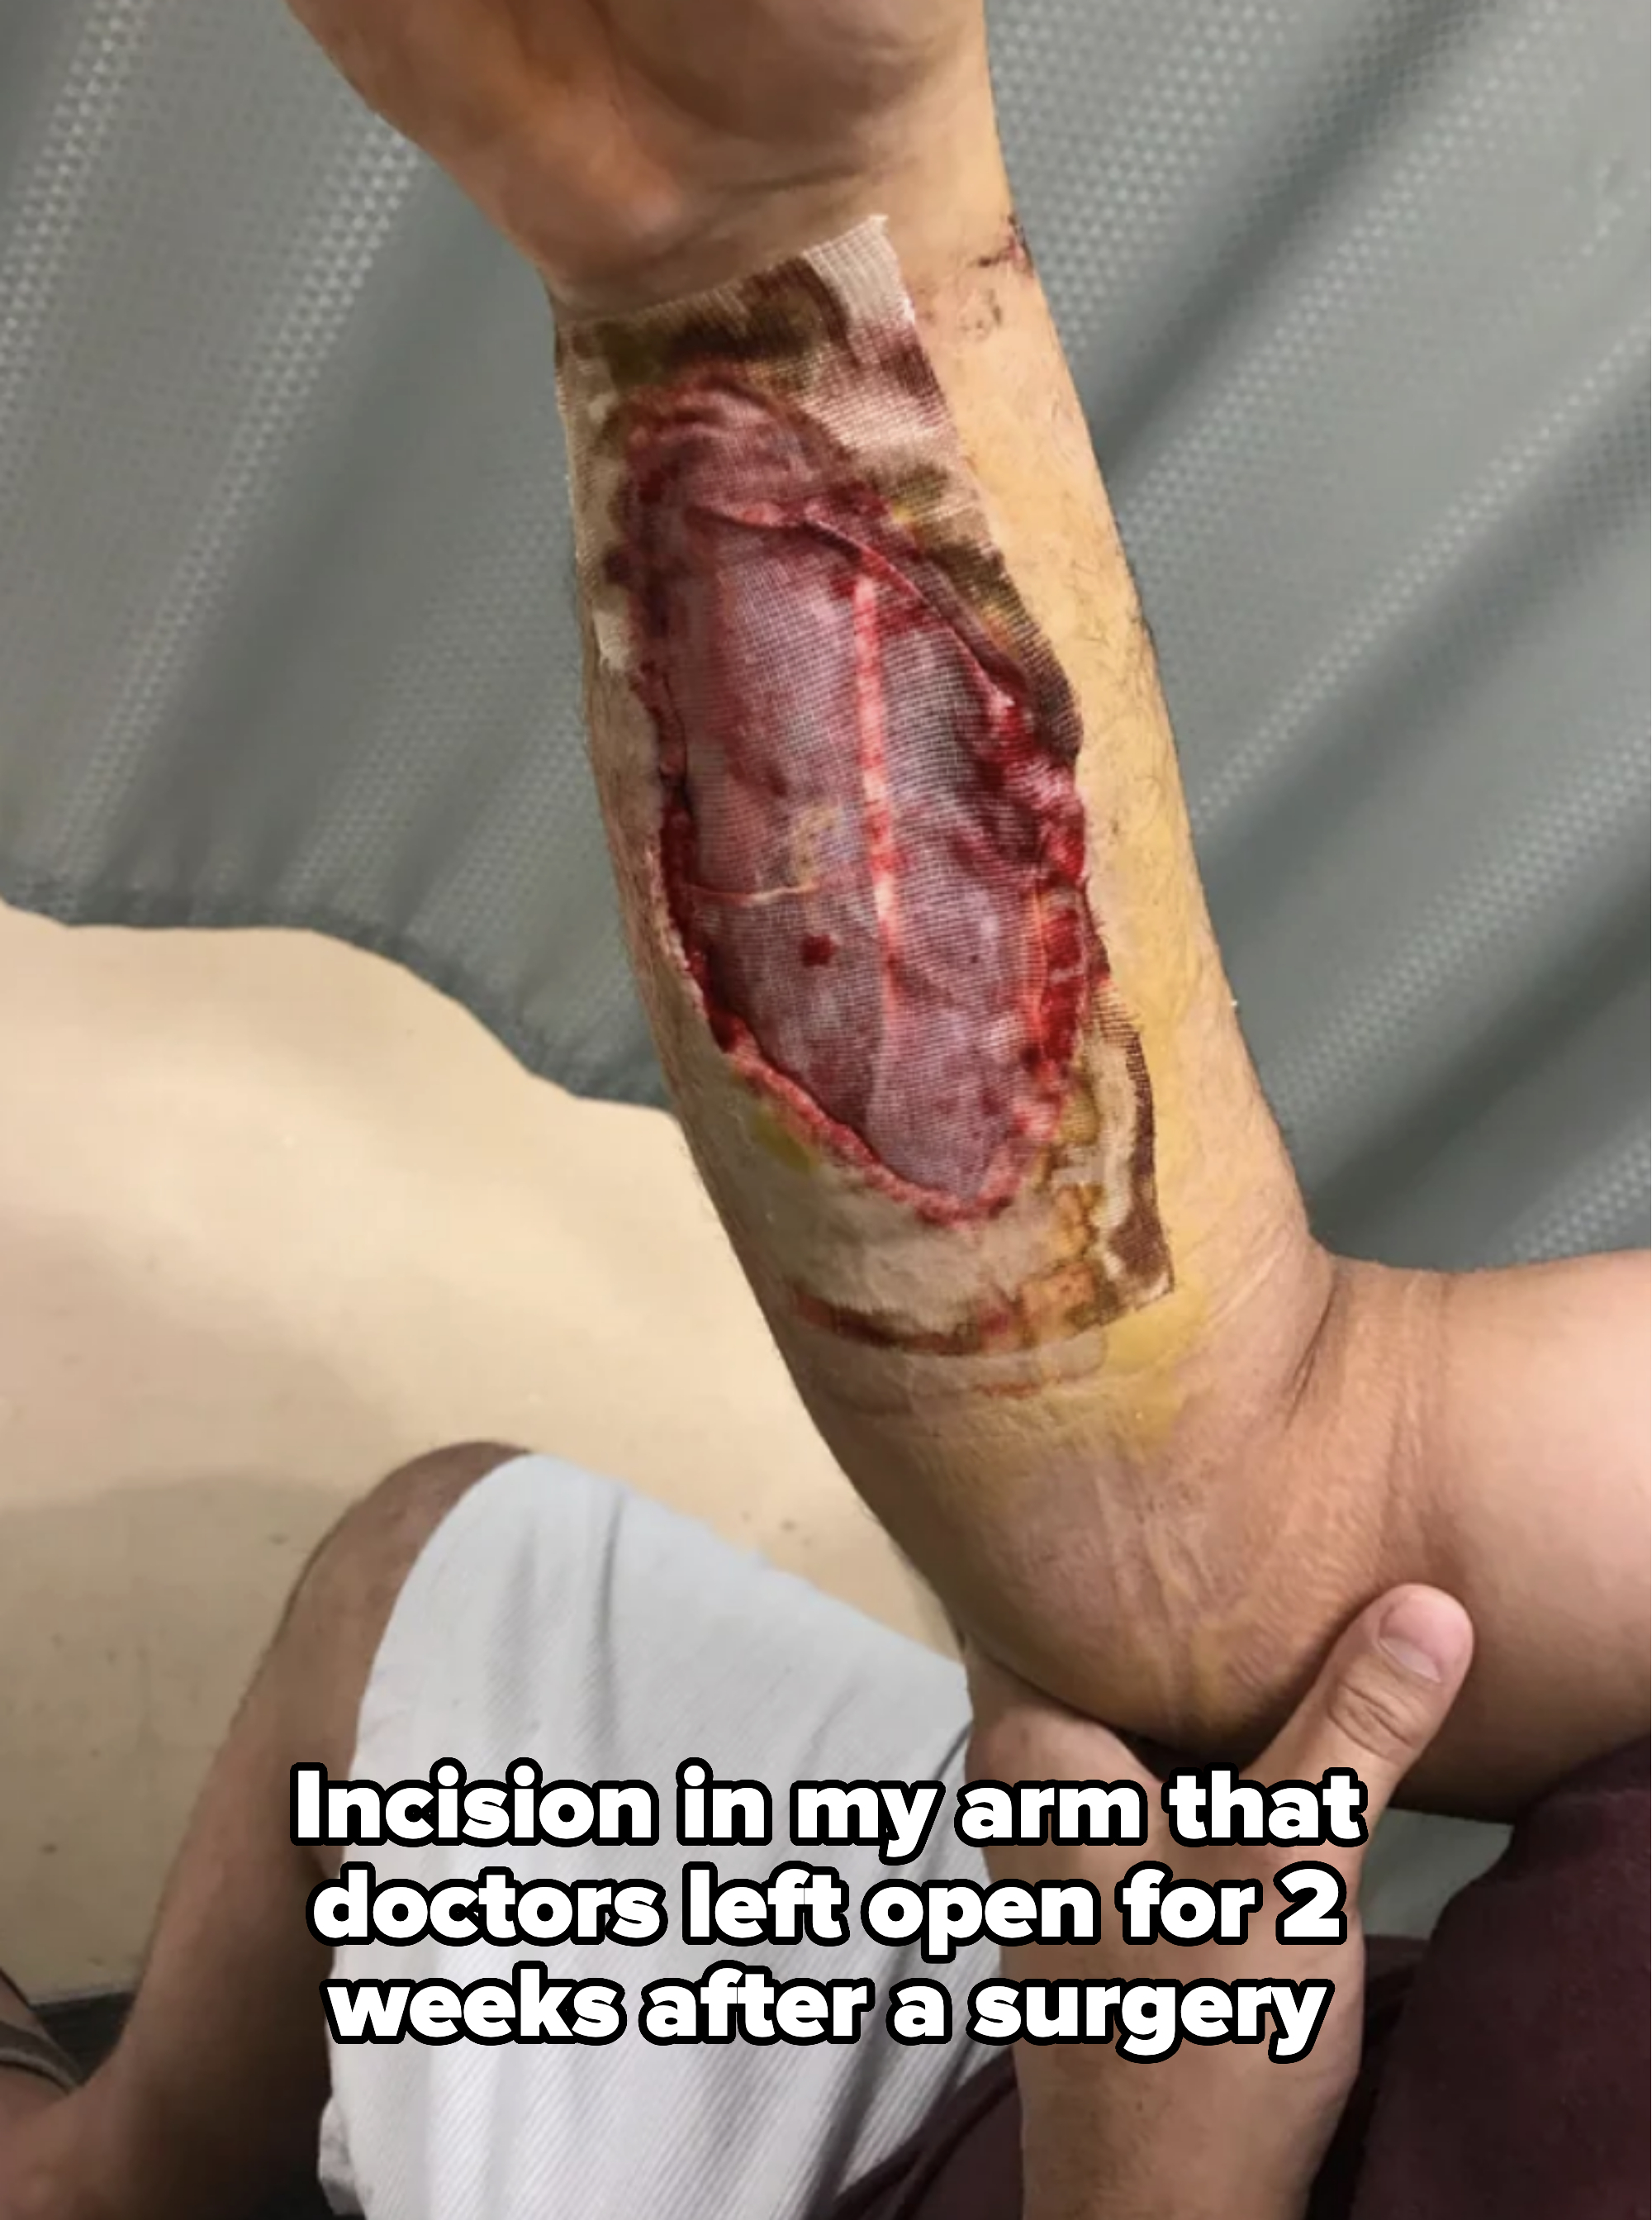 large bandaged open wound